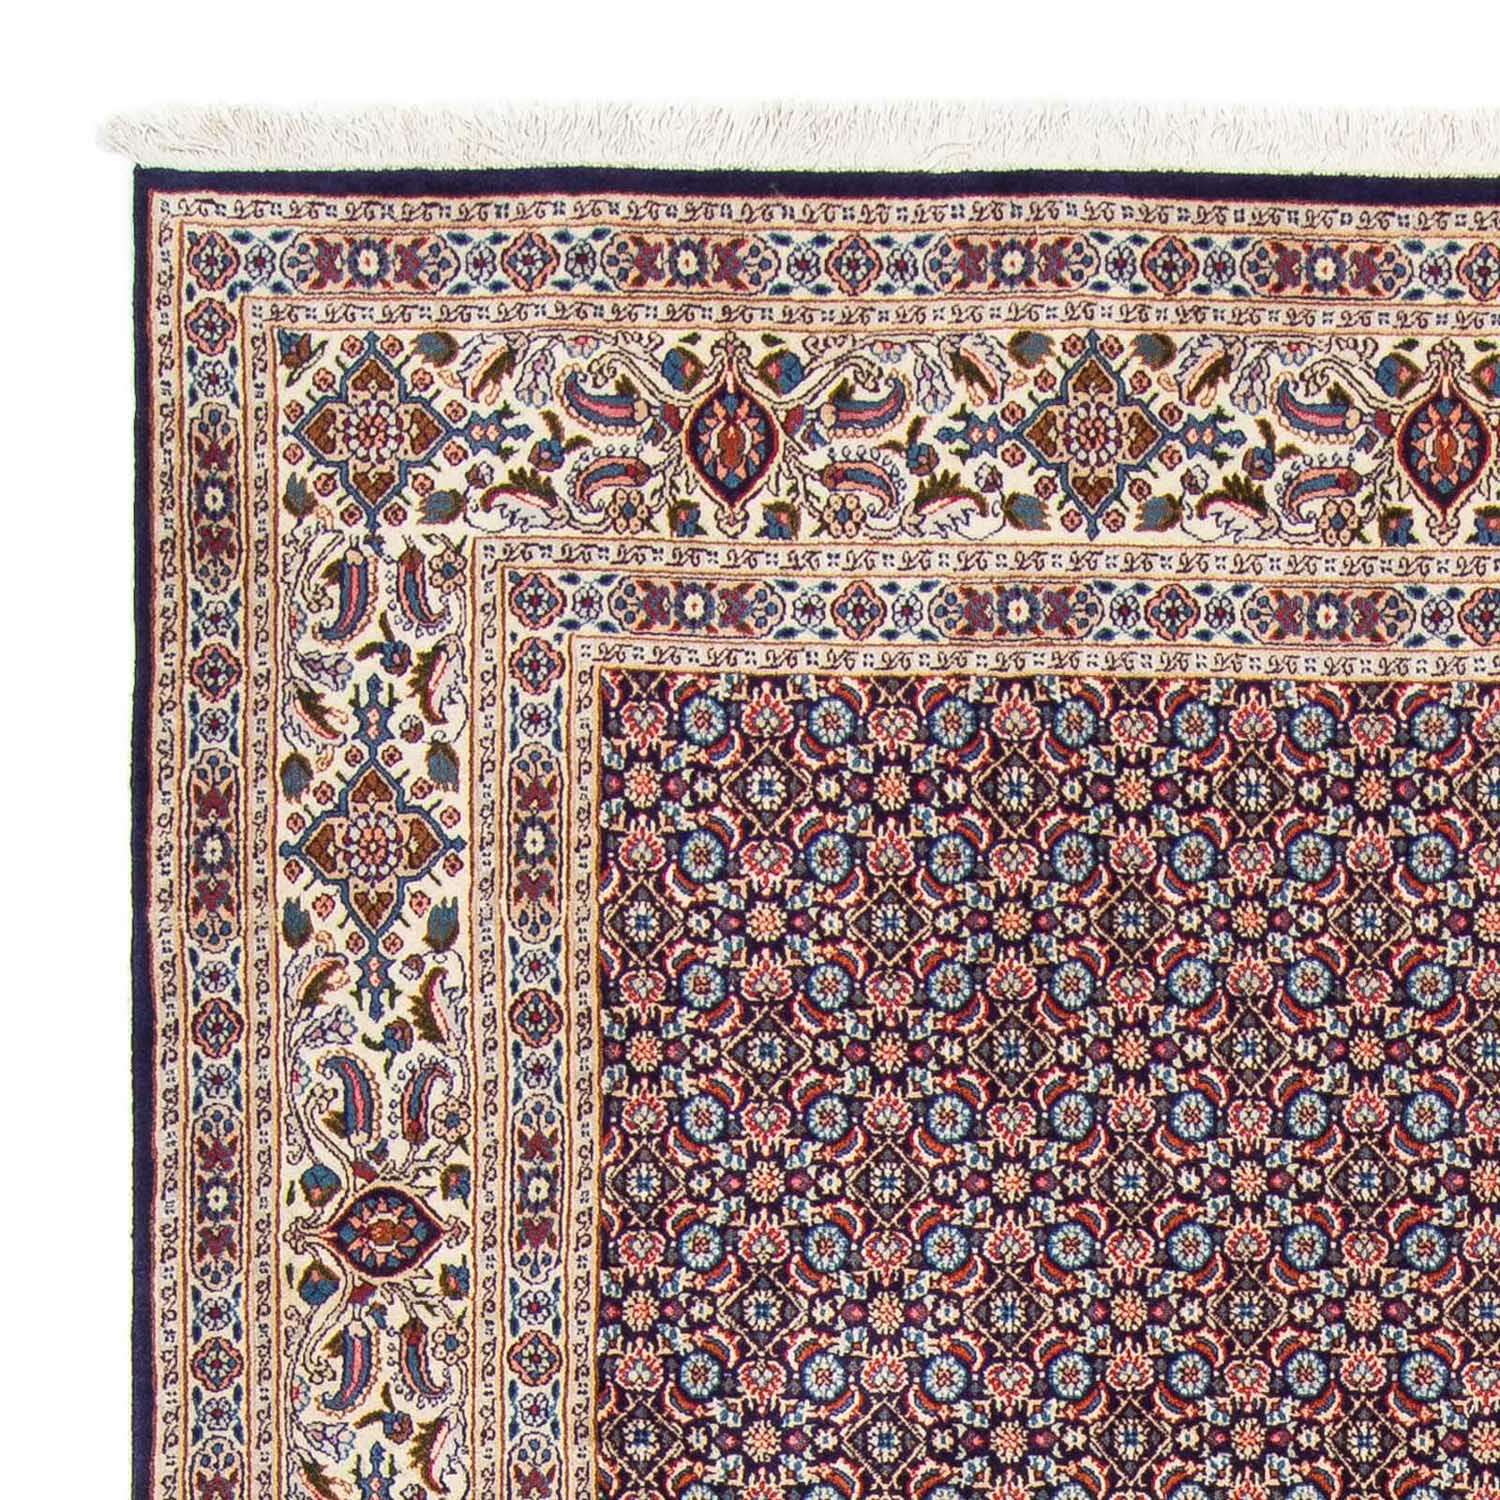 Tapis persan - Classique - 298 x 202 cm - bleu foncé